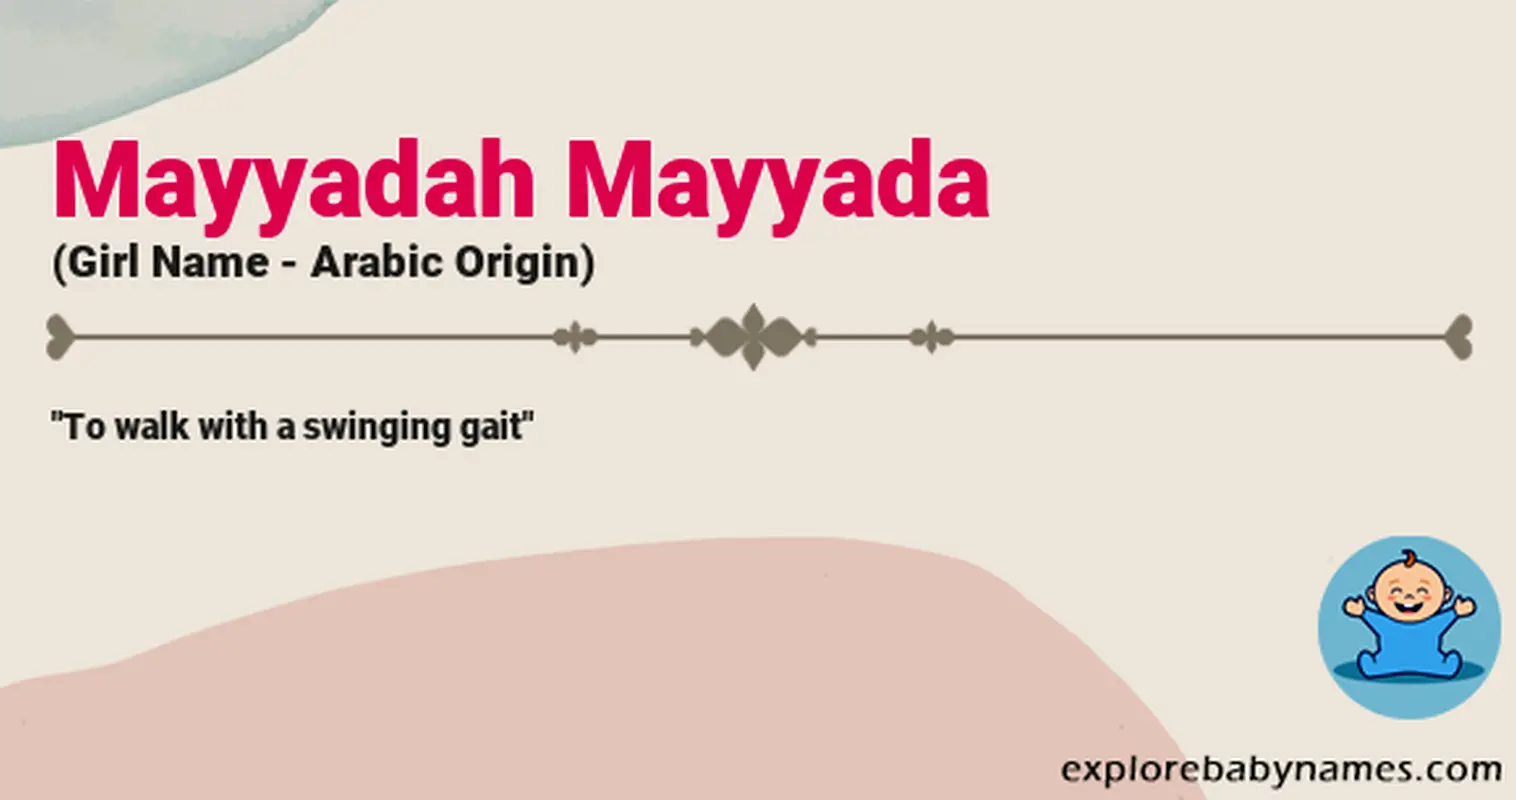 Meaning of Mayyadah Mayyada